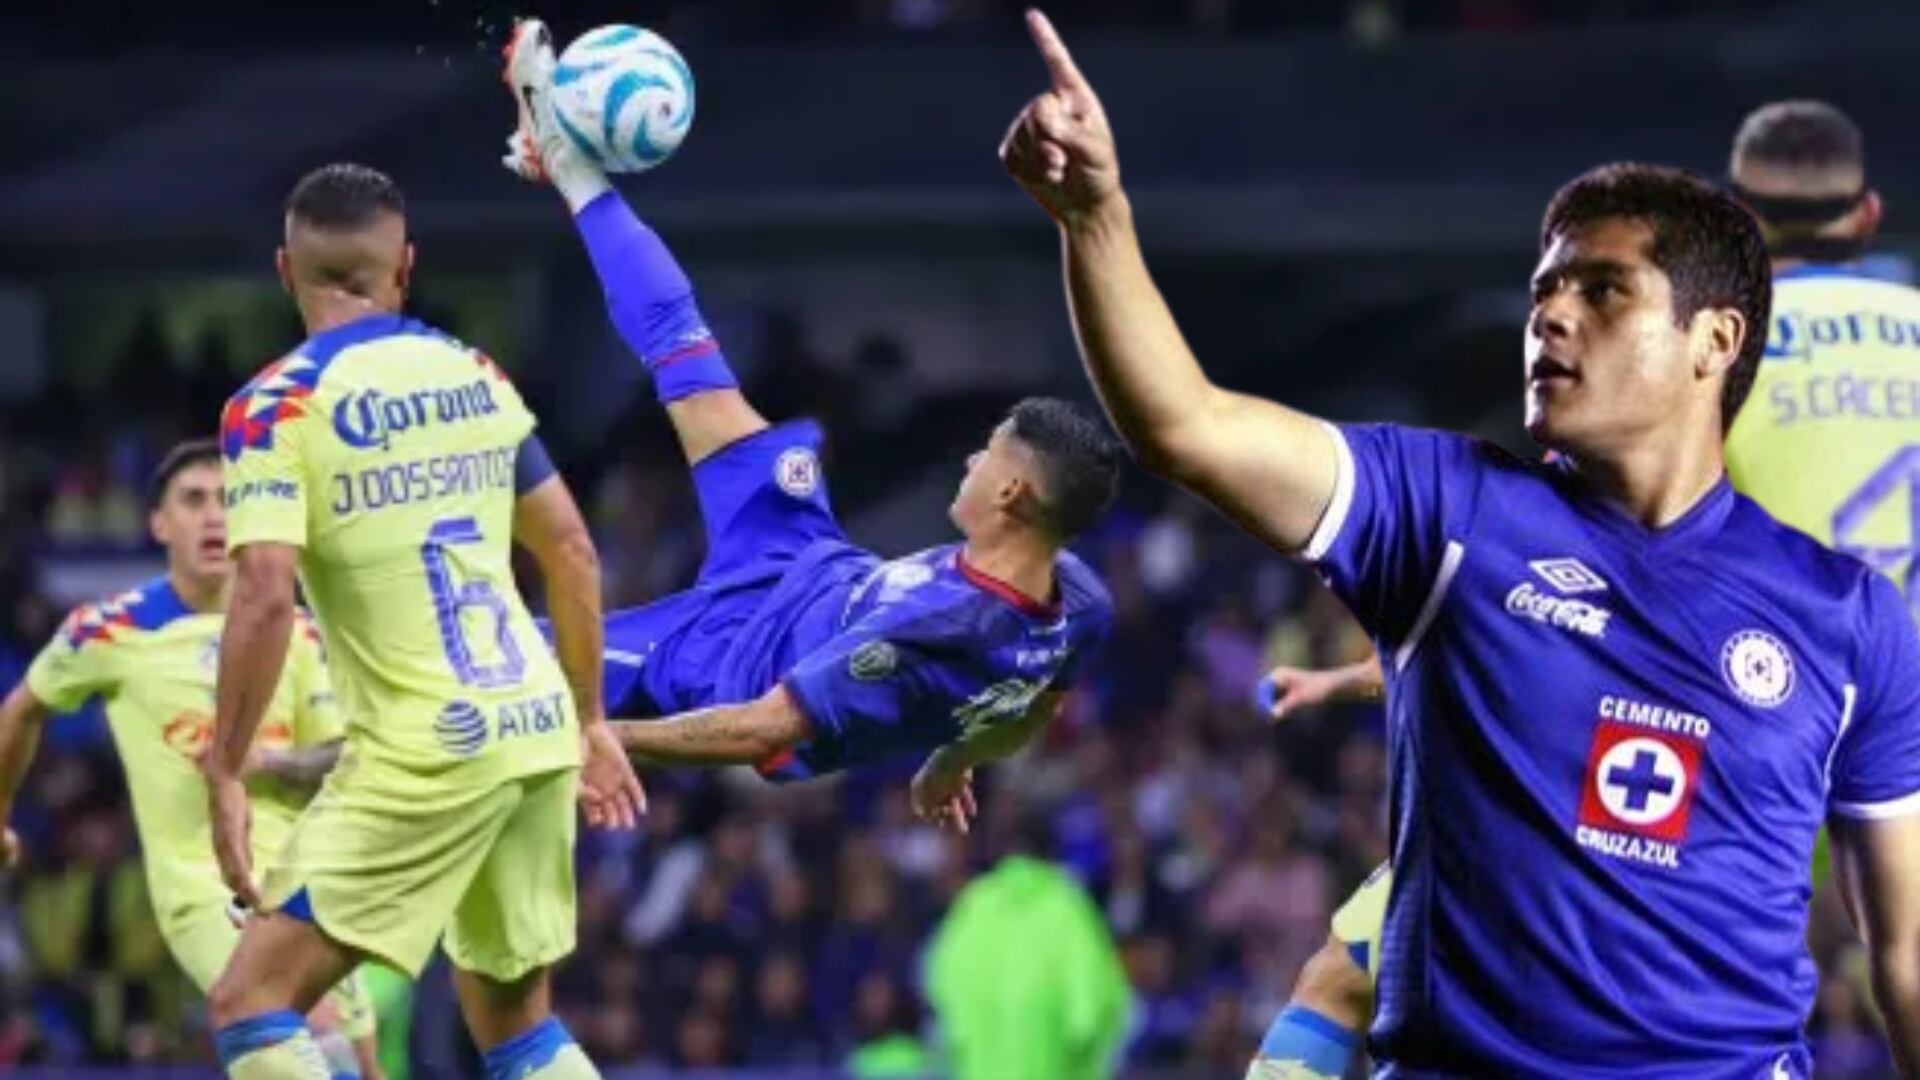 Chuleta Orozco reaparece en Cruz Azul, lo que dijo de la derrota vs América, impacta